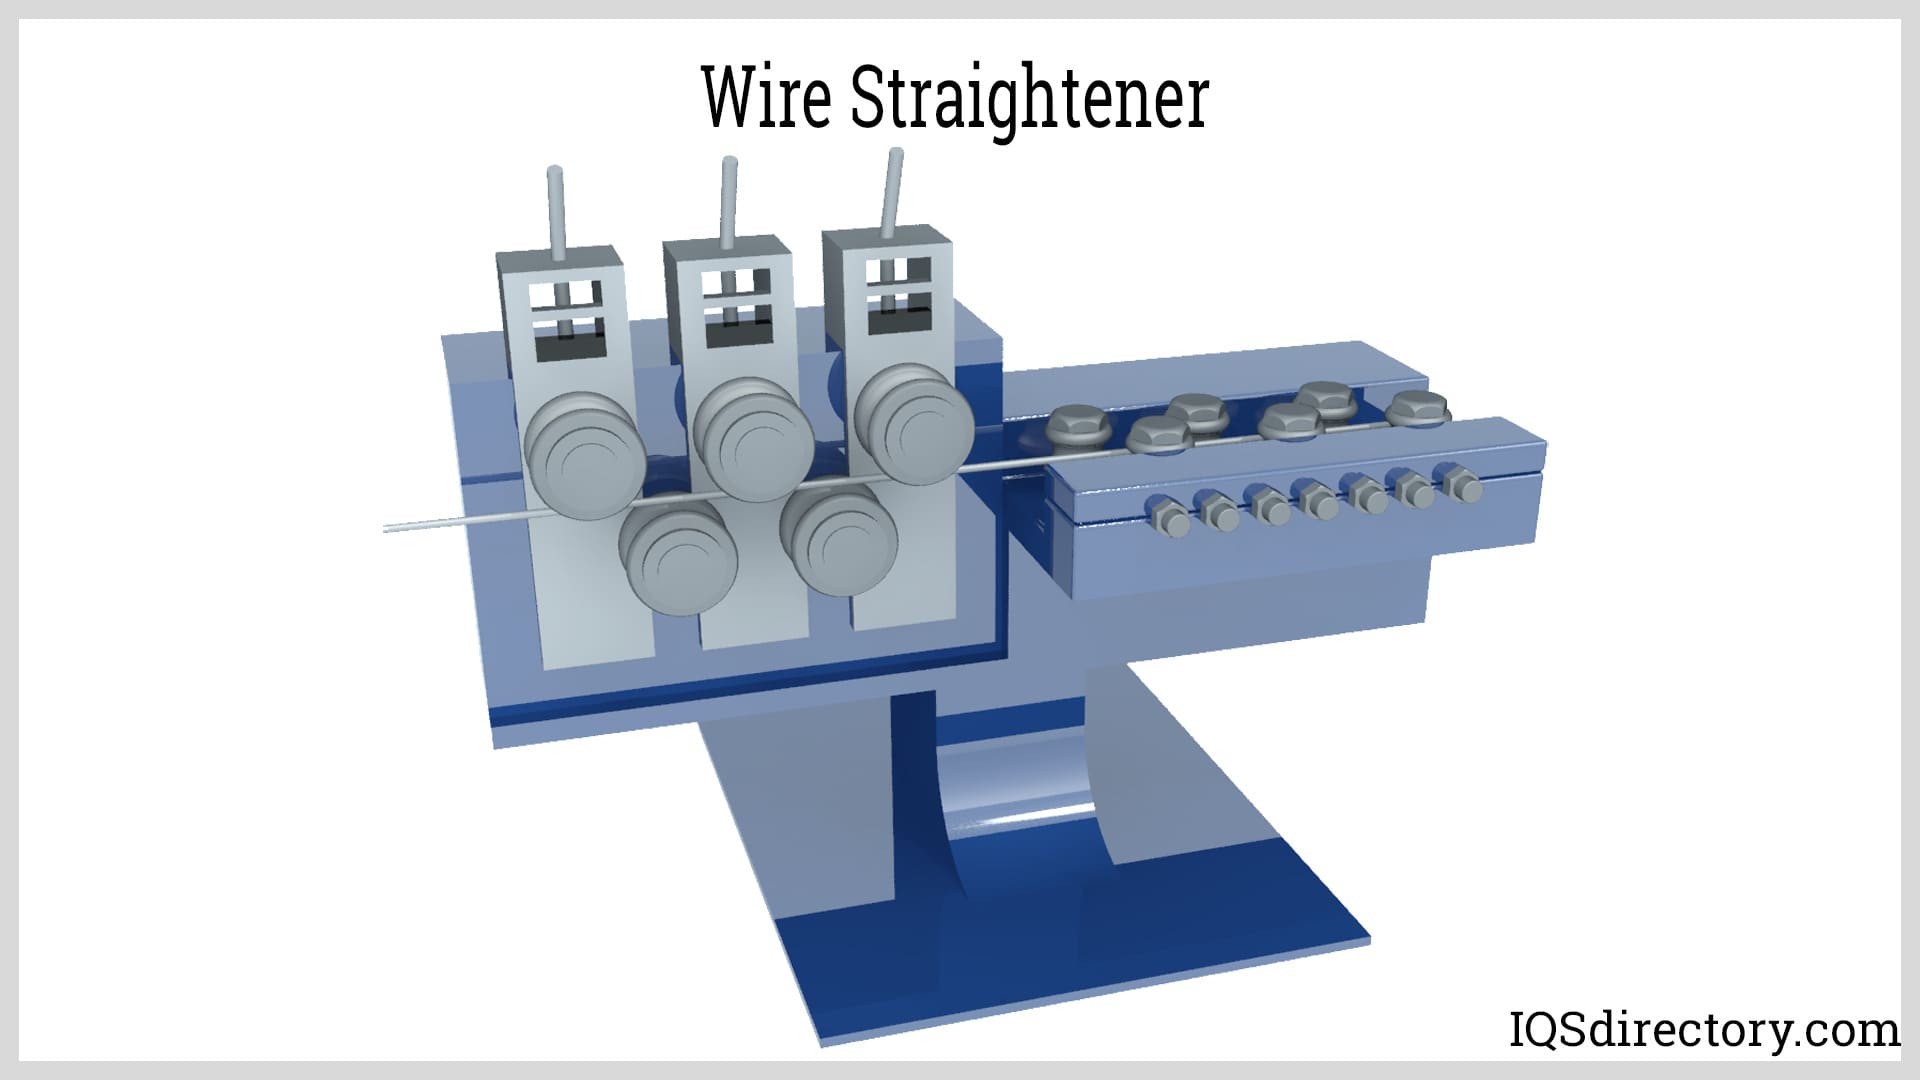 Wire Straightener